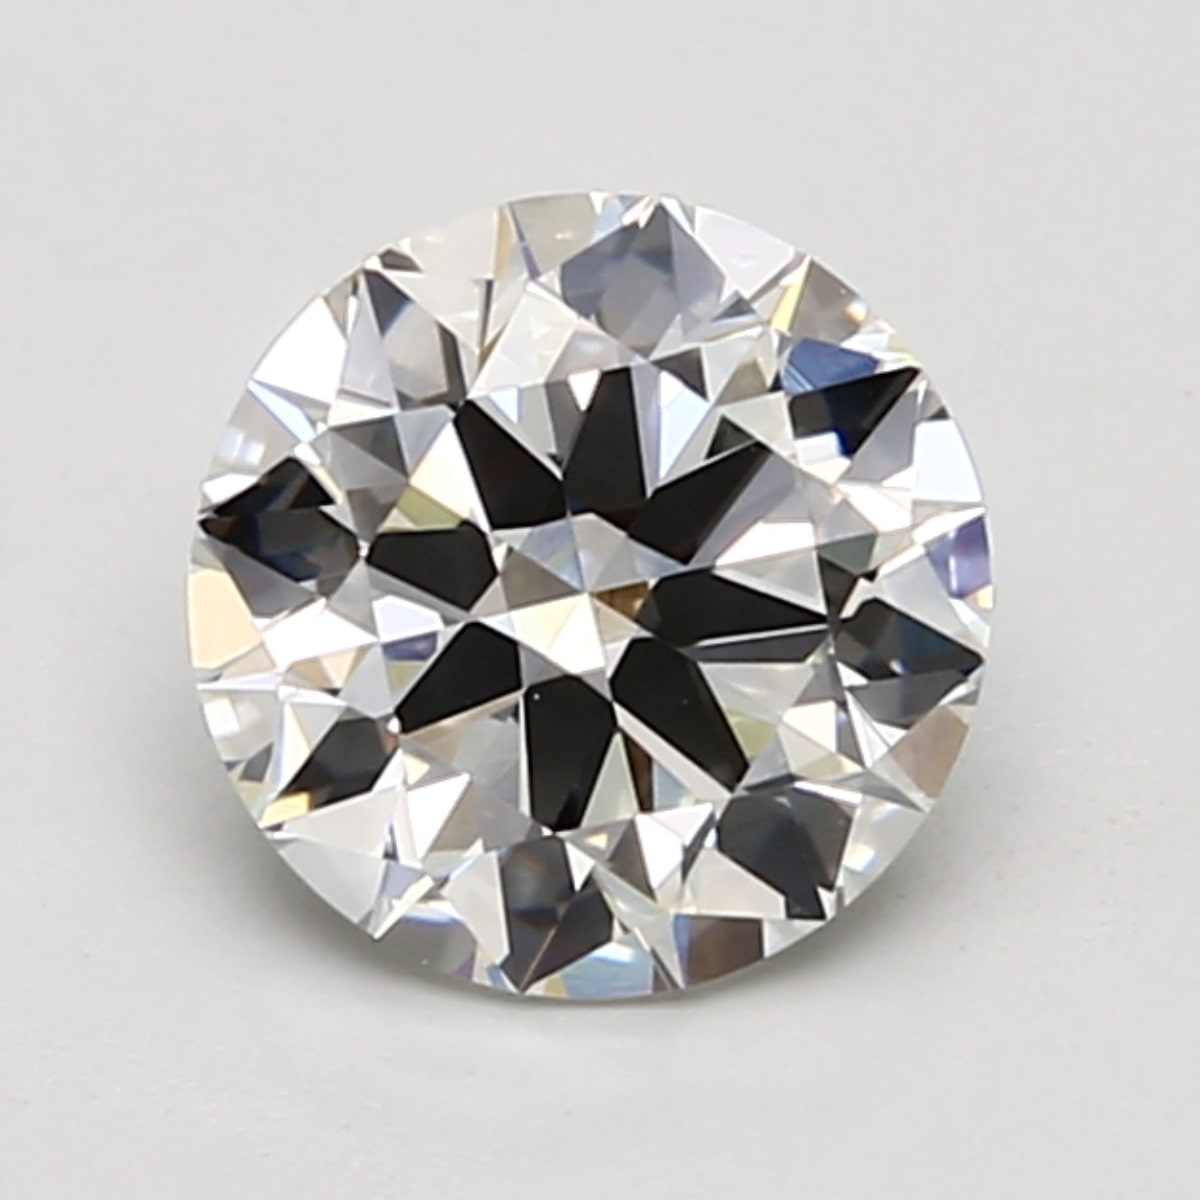 1.5 carat I color diamond